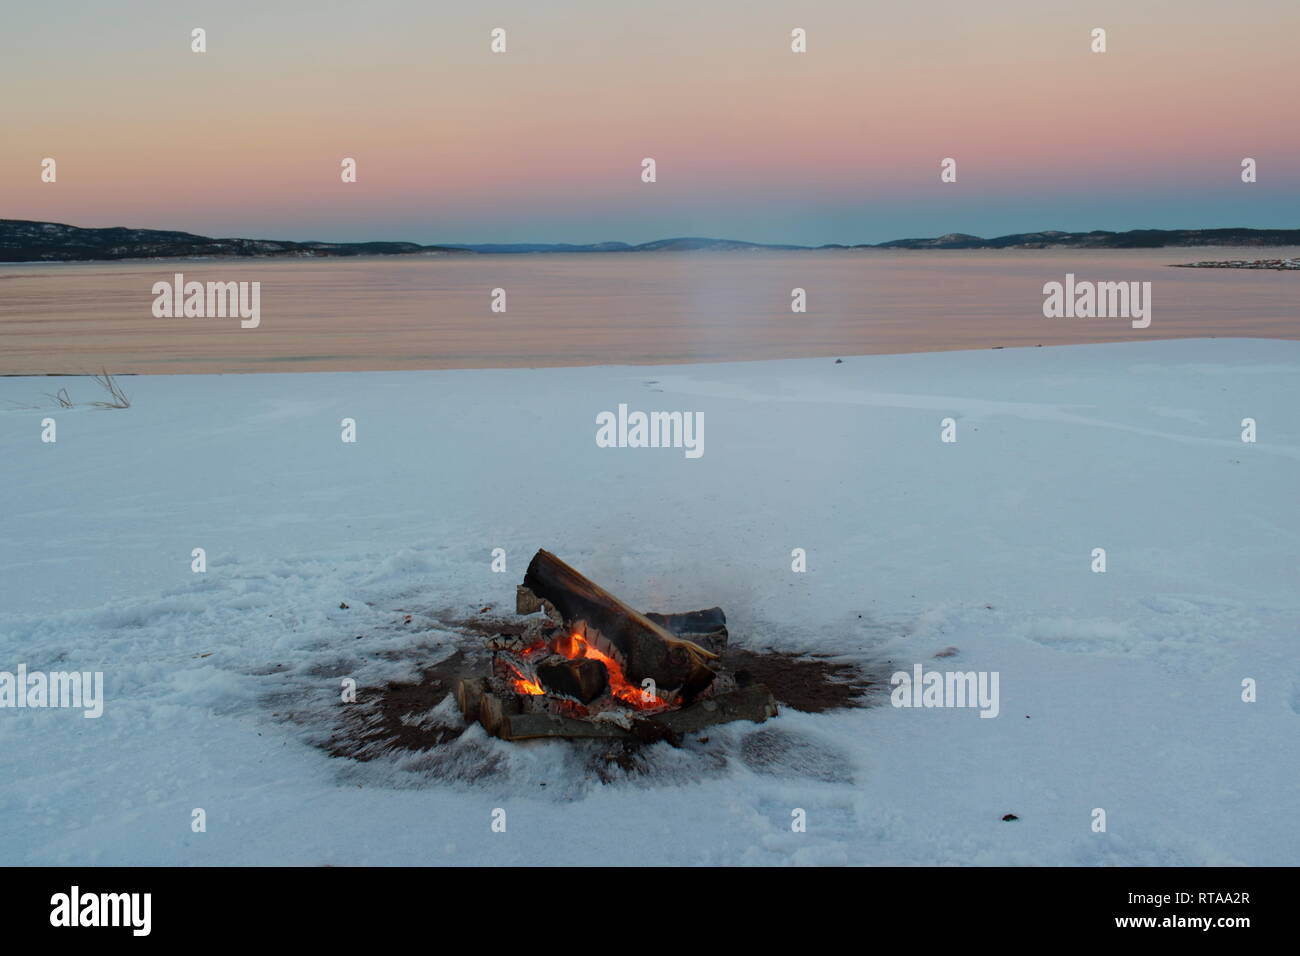 Ein Lagerfeuer brennt am Ufer einer Bucht der Ostsee. Es ist Sonnenuntergang an einem Wintertag, und der Strand ist mit Schnee bedeckt. Stockfoto